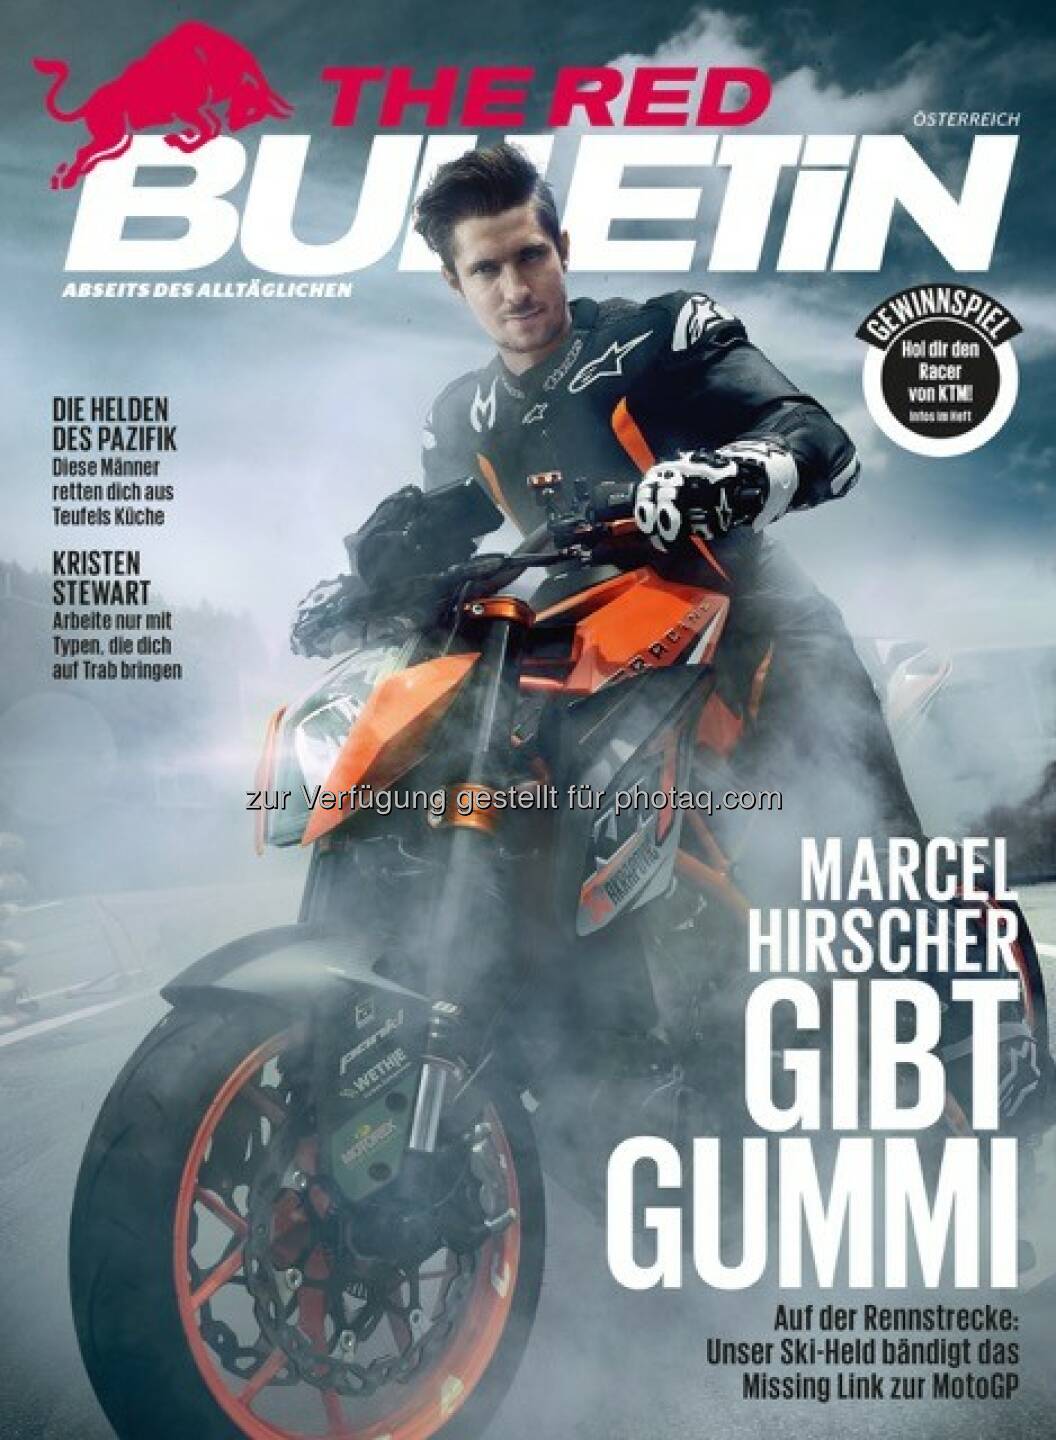 The Red Bulletin : Neuer Vertriebskanal für das Active-Lifestyle-Männermagazin - mit den Oberösterreichischen Nachrichten : Fotocredit: Red Bull Media House GmbH